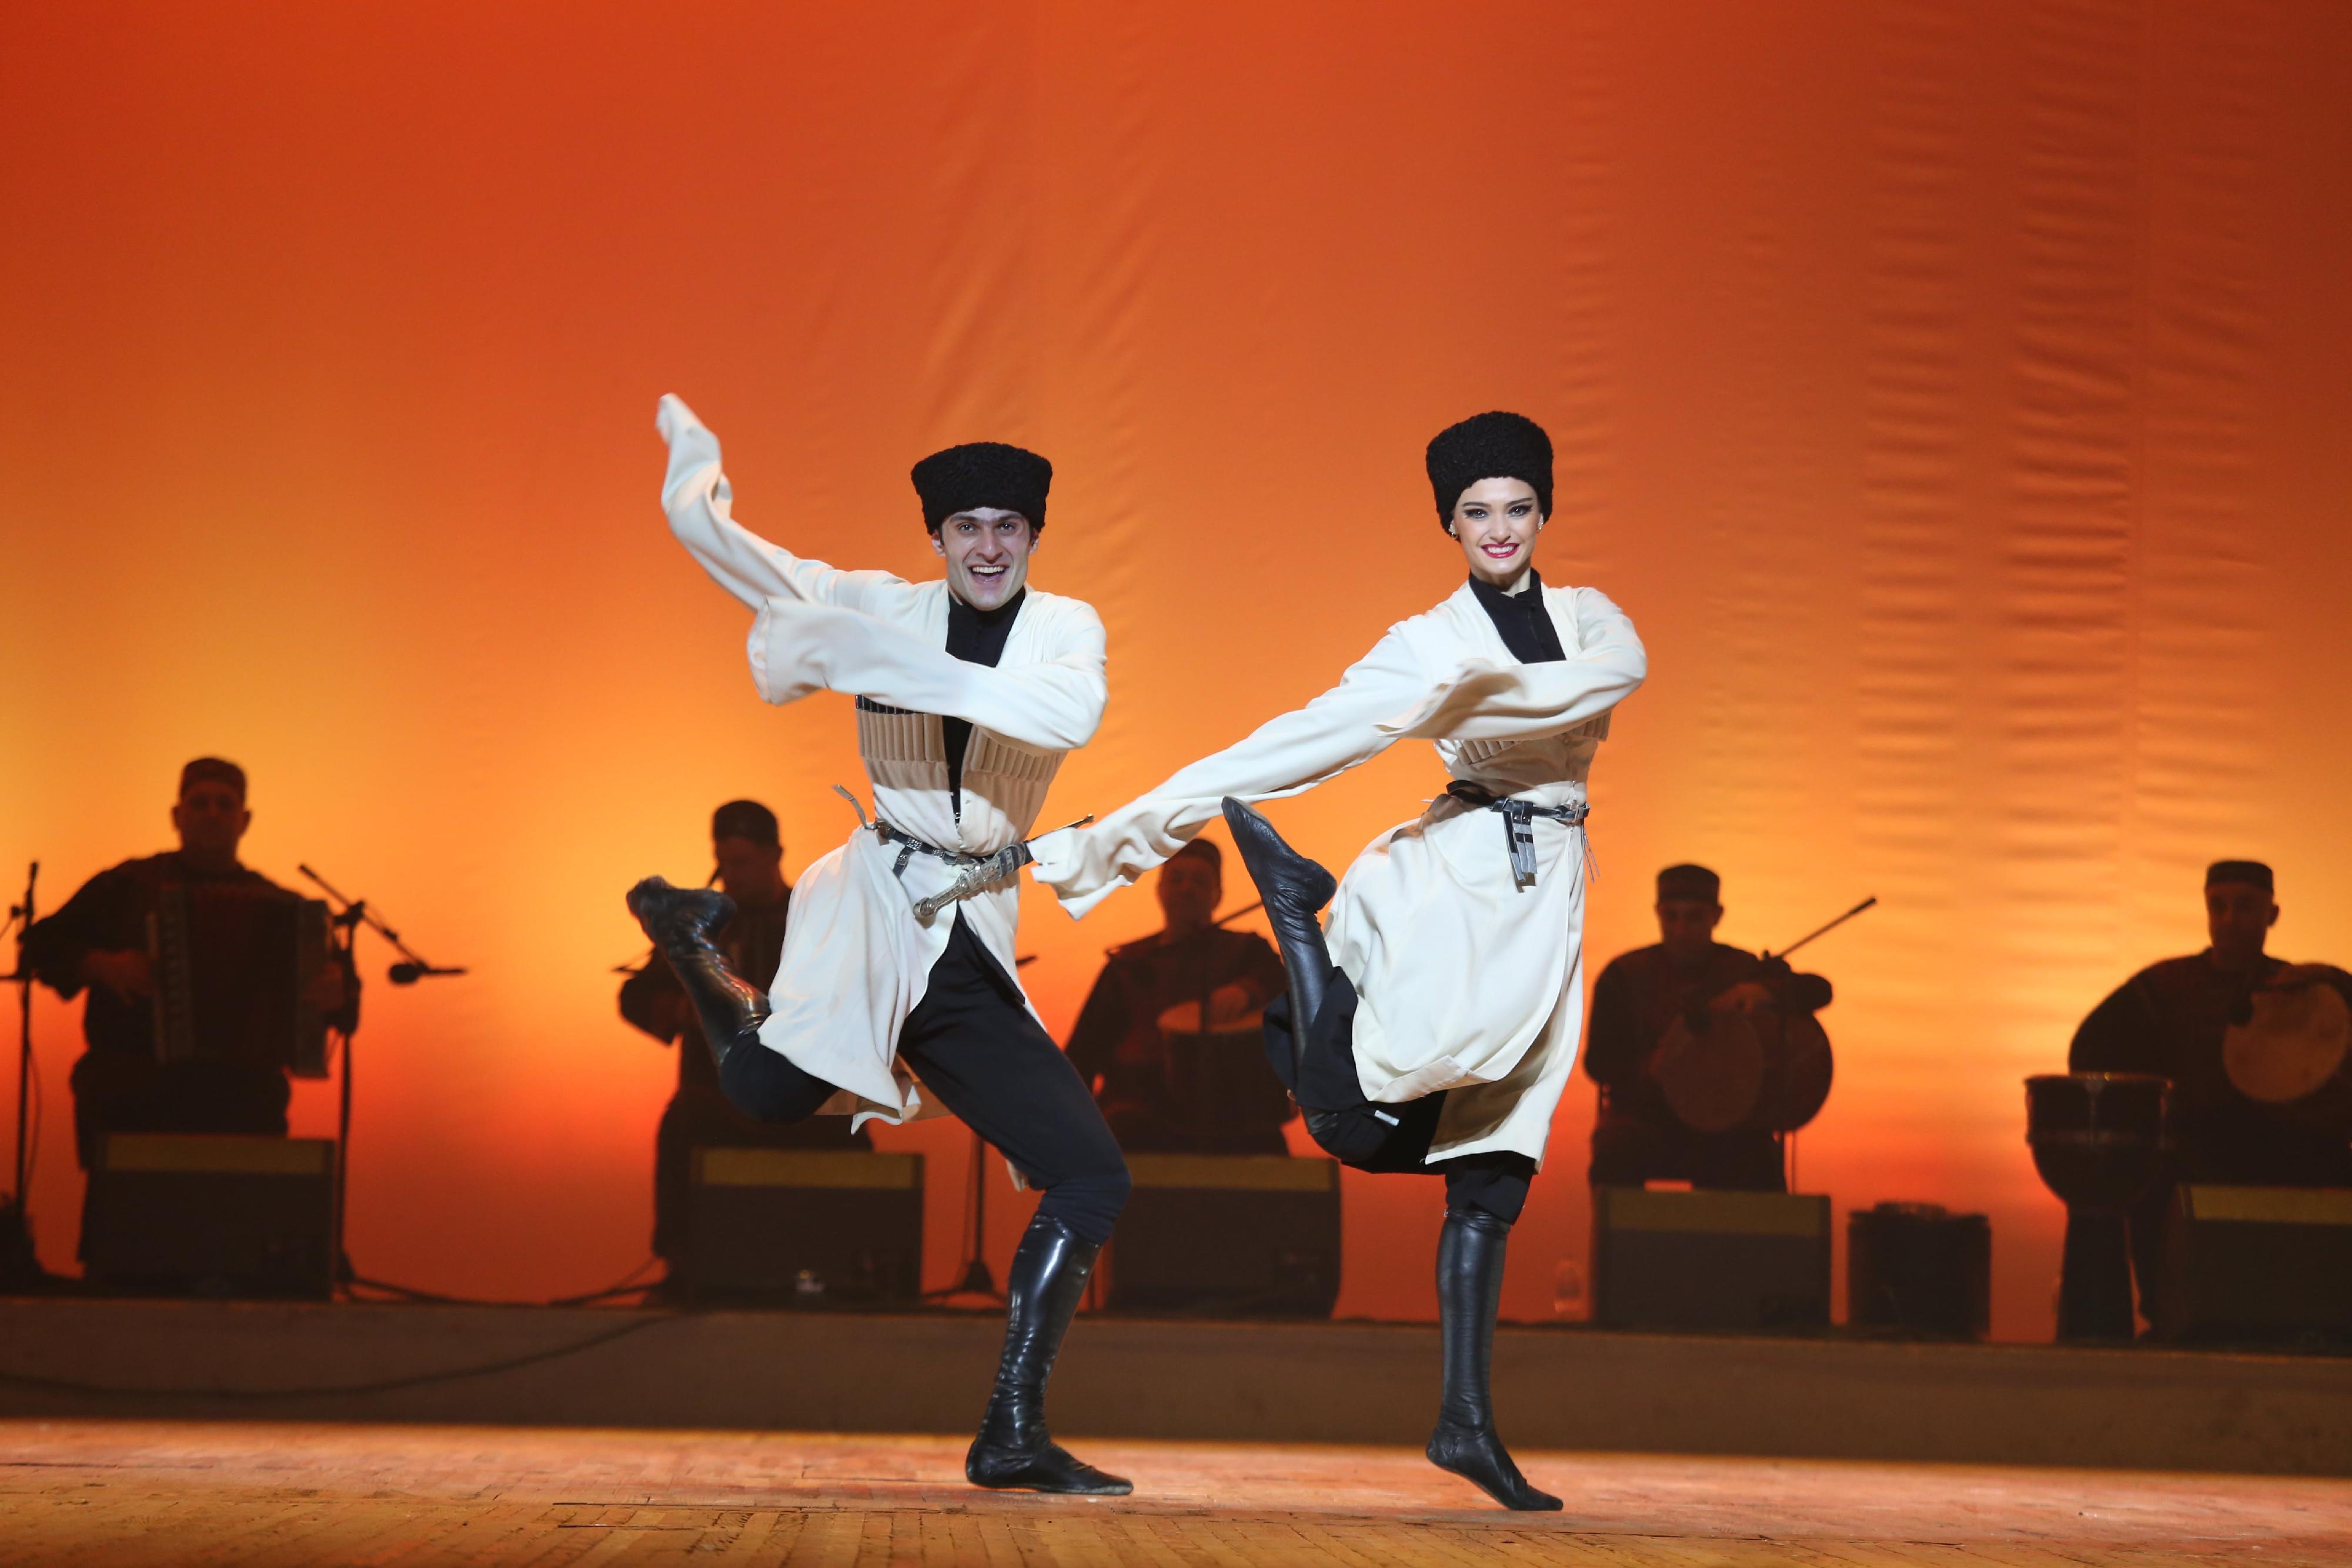 康樂及文化事務署邀得格魯吉亞國家舞蹈團於五月三十一日及六月一日在沙田大會堂演出。圖示格魯吉亞國家舞蹈團過往演出劇照。